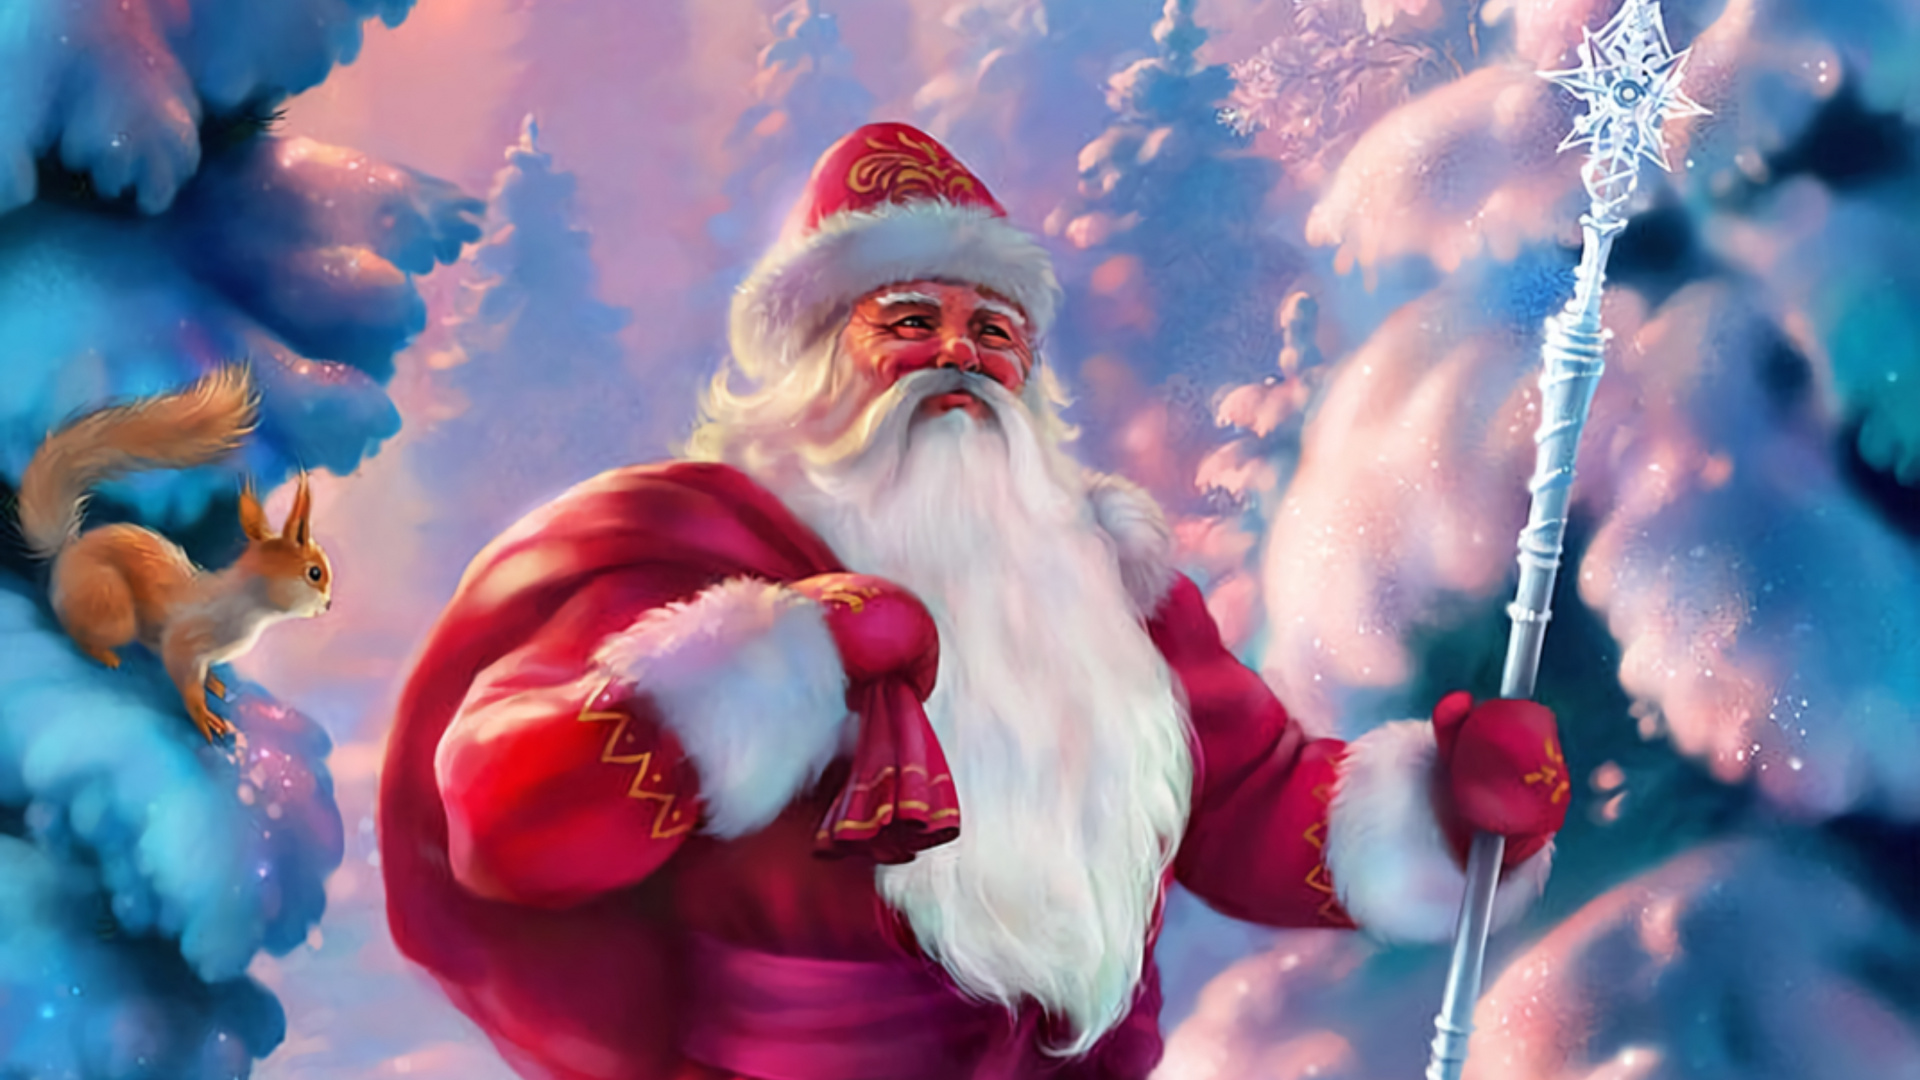 Weihnachtsmann, Ded Moroz, Weihnachten, Animation, Pink. Wallpaper in 1920x1080 Resolution